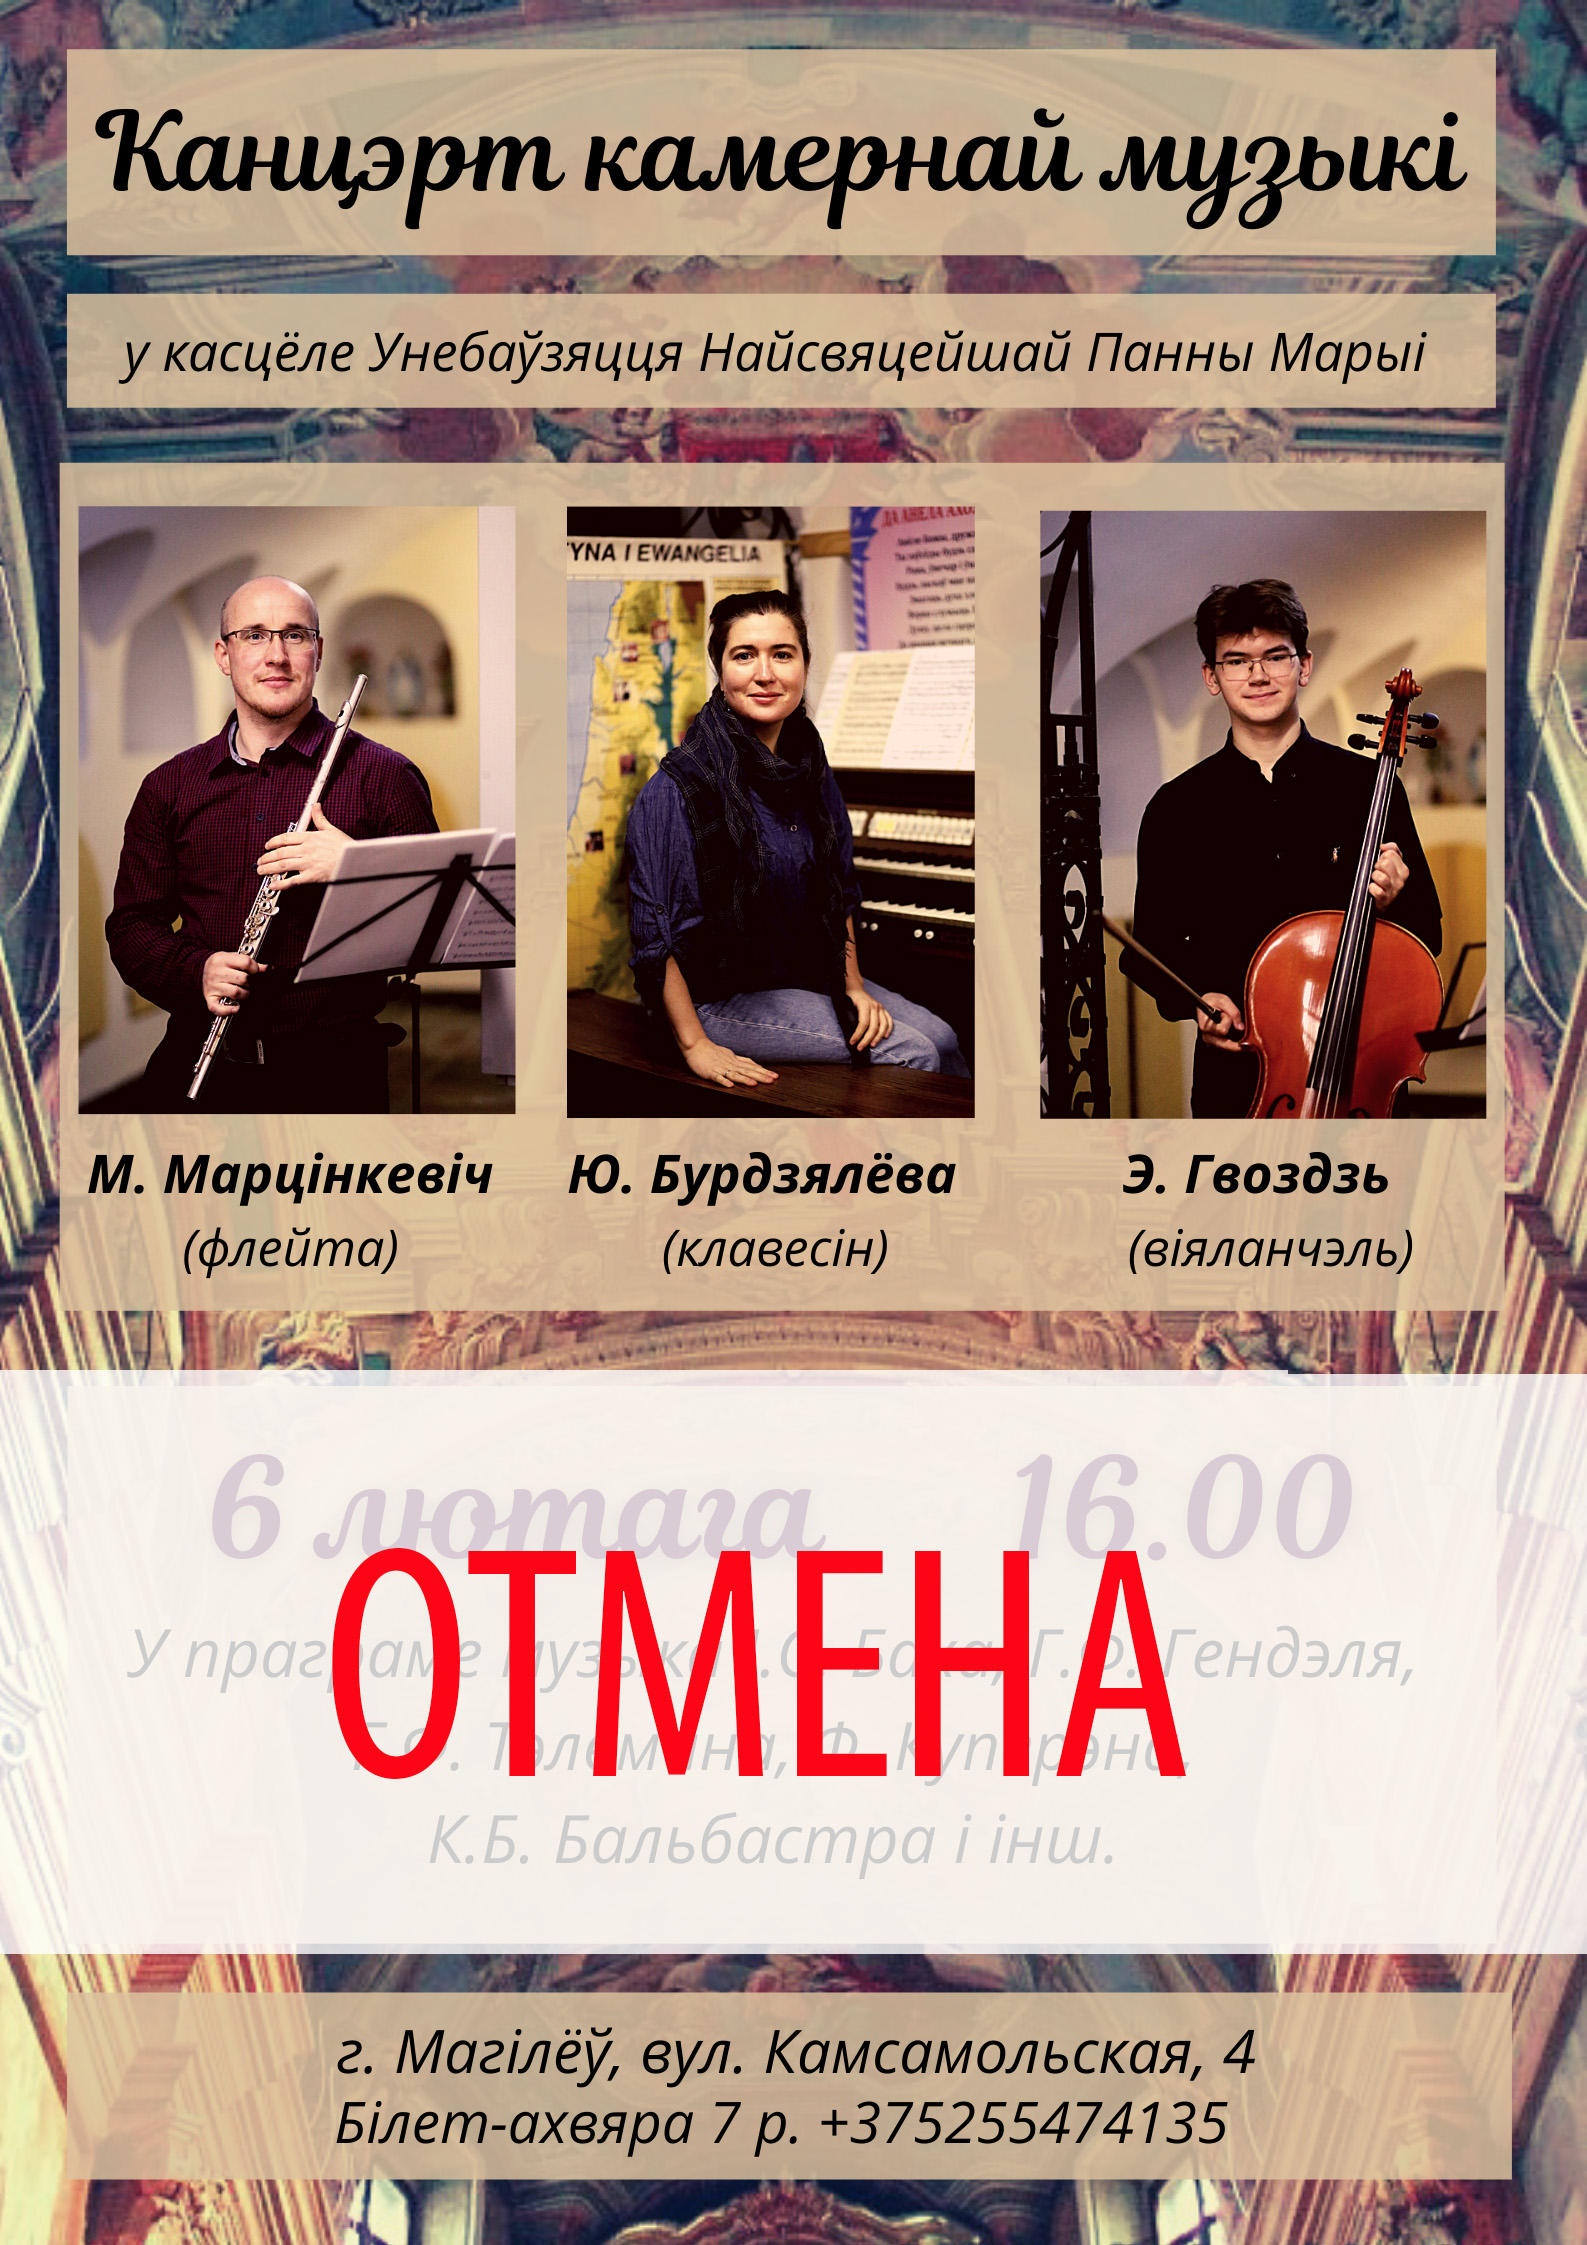 Могилевчан приглашают на концерт камерной музыки 6 февраля